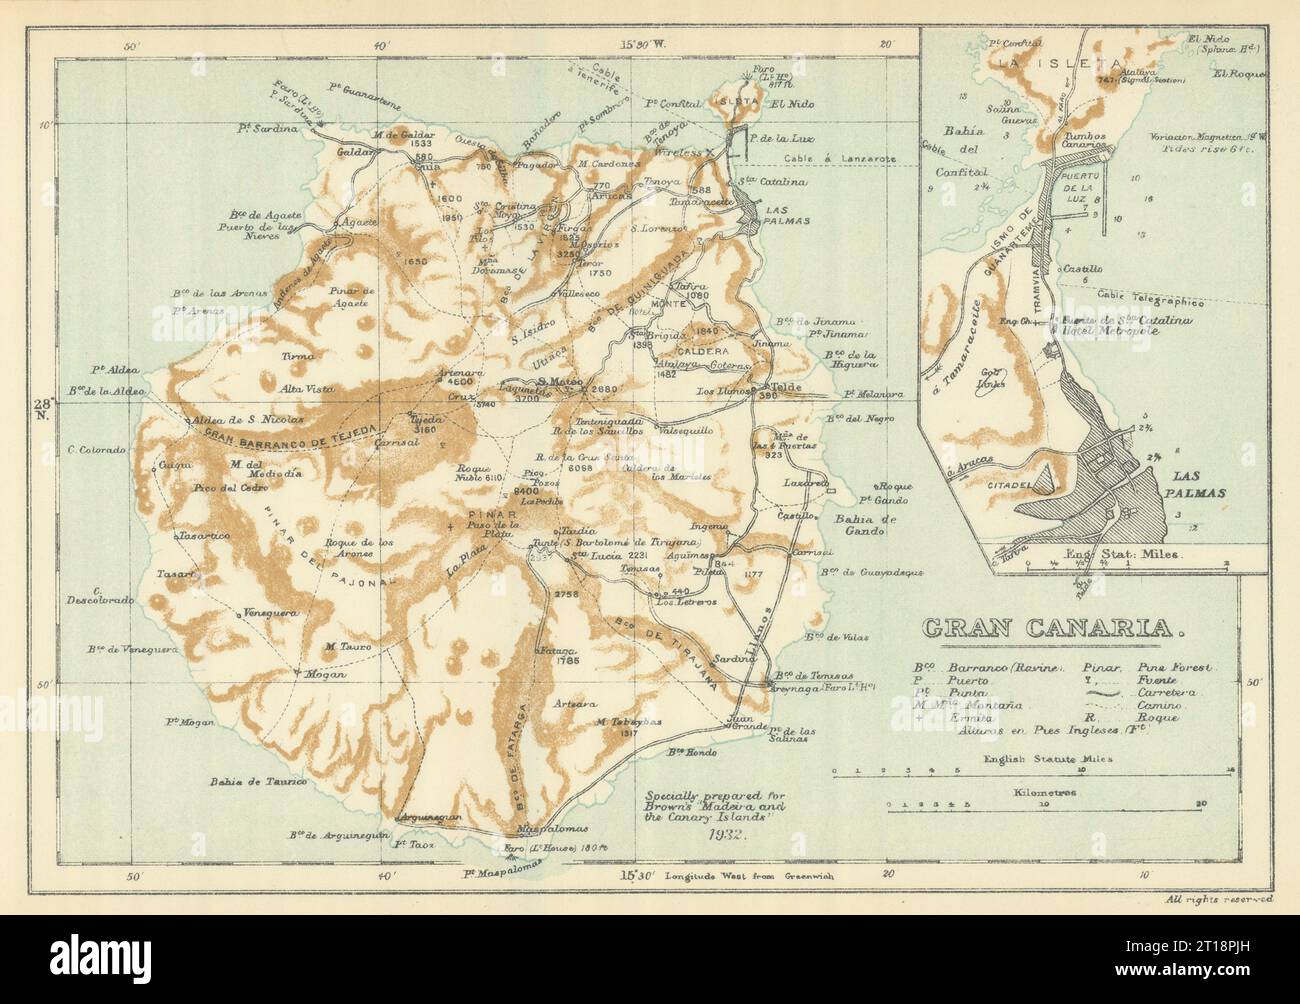 Gran Canaria Und Las Palmas, Kanarische Inseln. SAMLER BRAUN 1932 alte Vintage-Karte Stockfoto